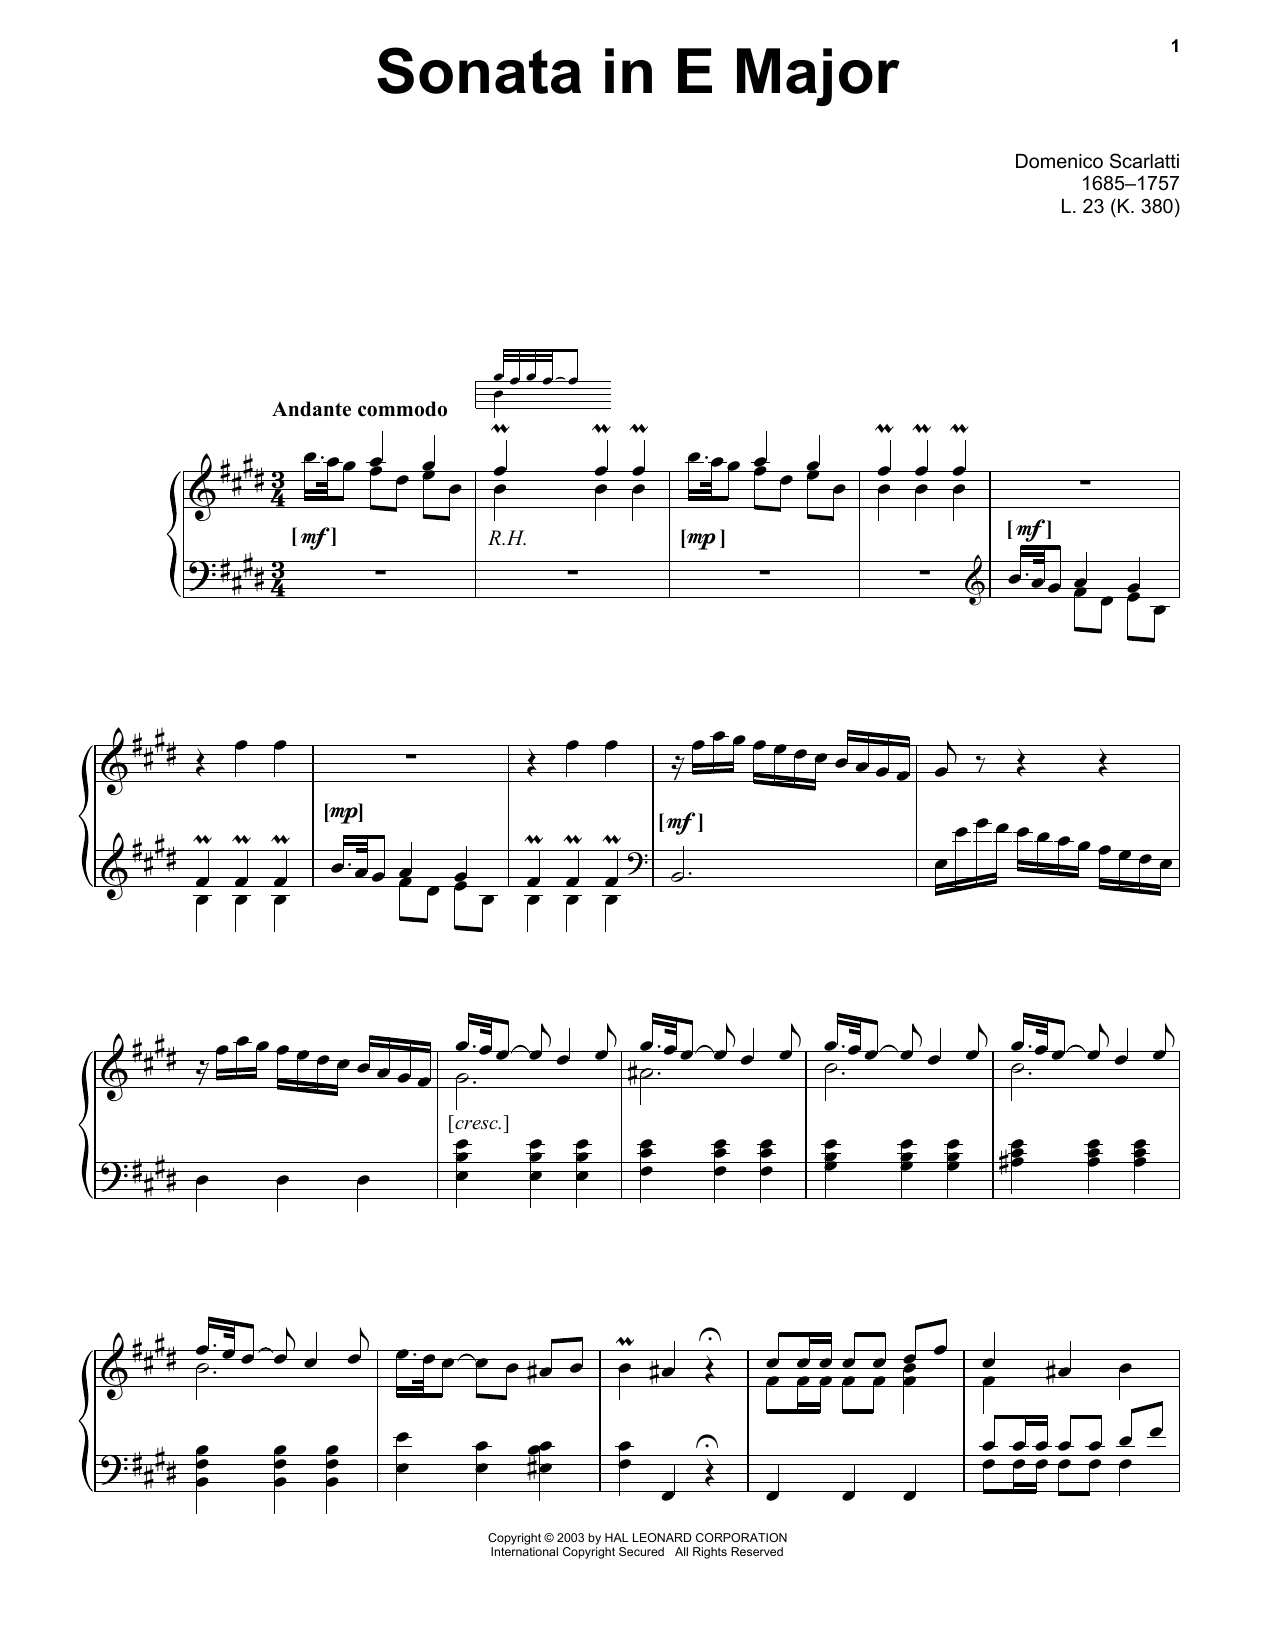 Domenico Scarlatti Sonata In E Major, L. 23 sheet music notes and chords arranged for Piano Solo